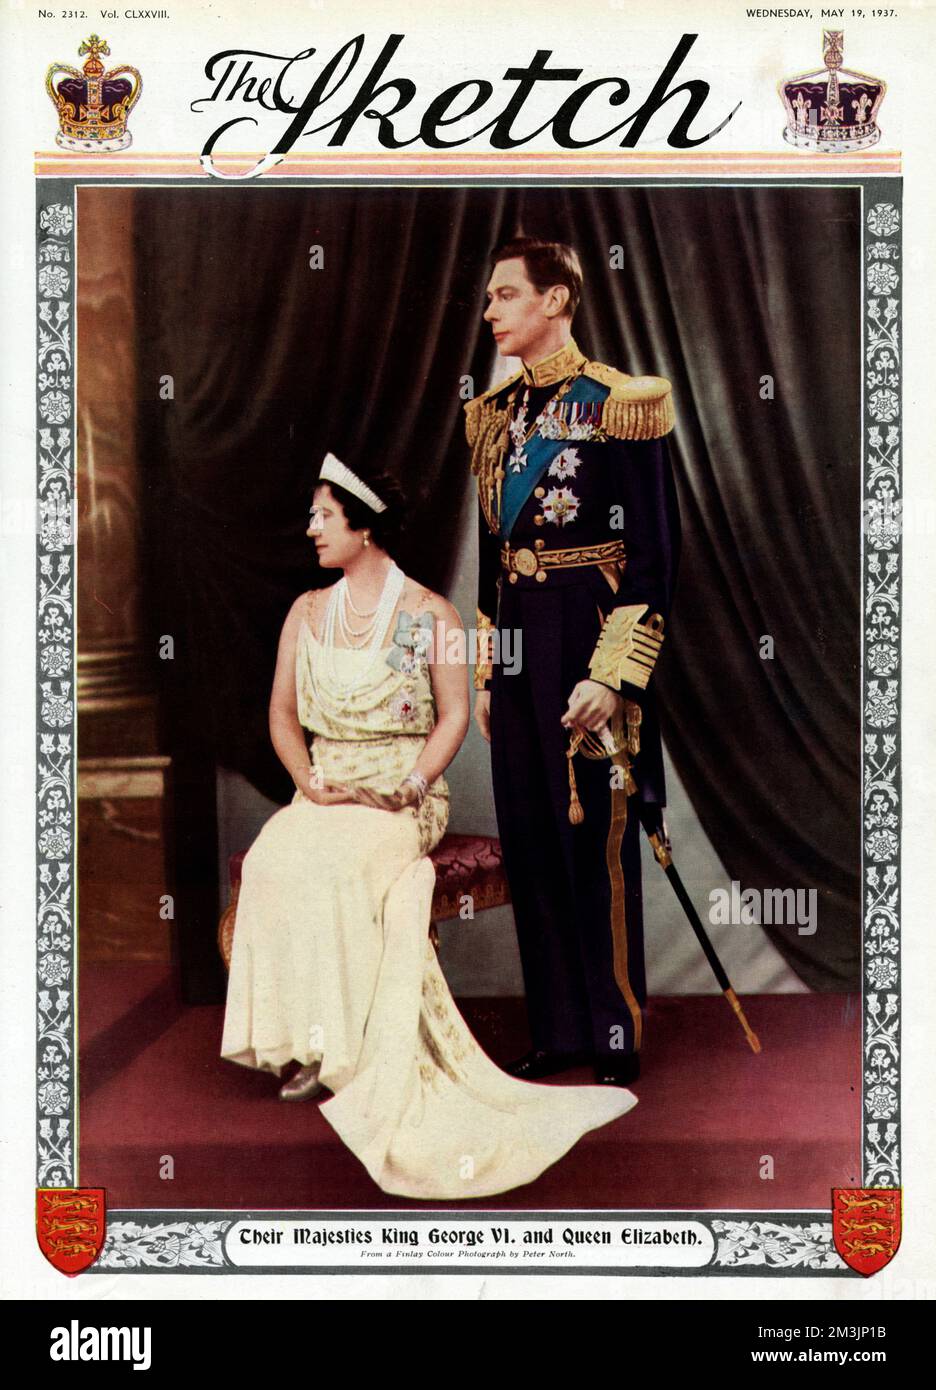 Titelseite zur Feier der Krönung von König George VI. (1895 - 1952) und Königin Elizabeth, auch bekannt als Königin Mutter (1900 - 2002) Datum: 1937 Stockfoto